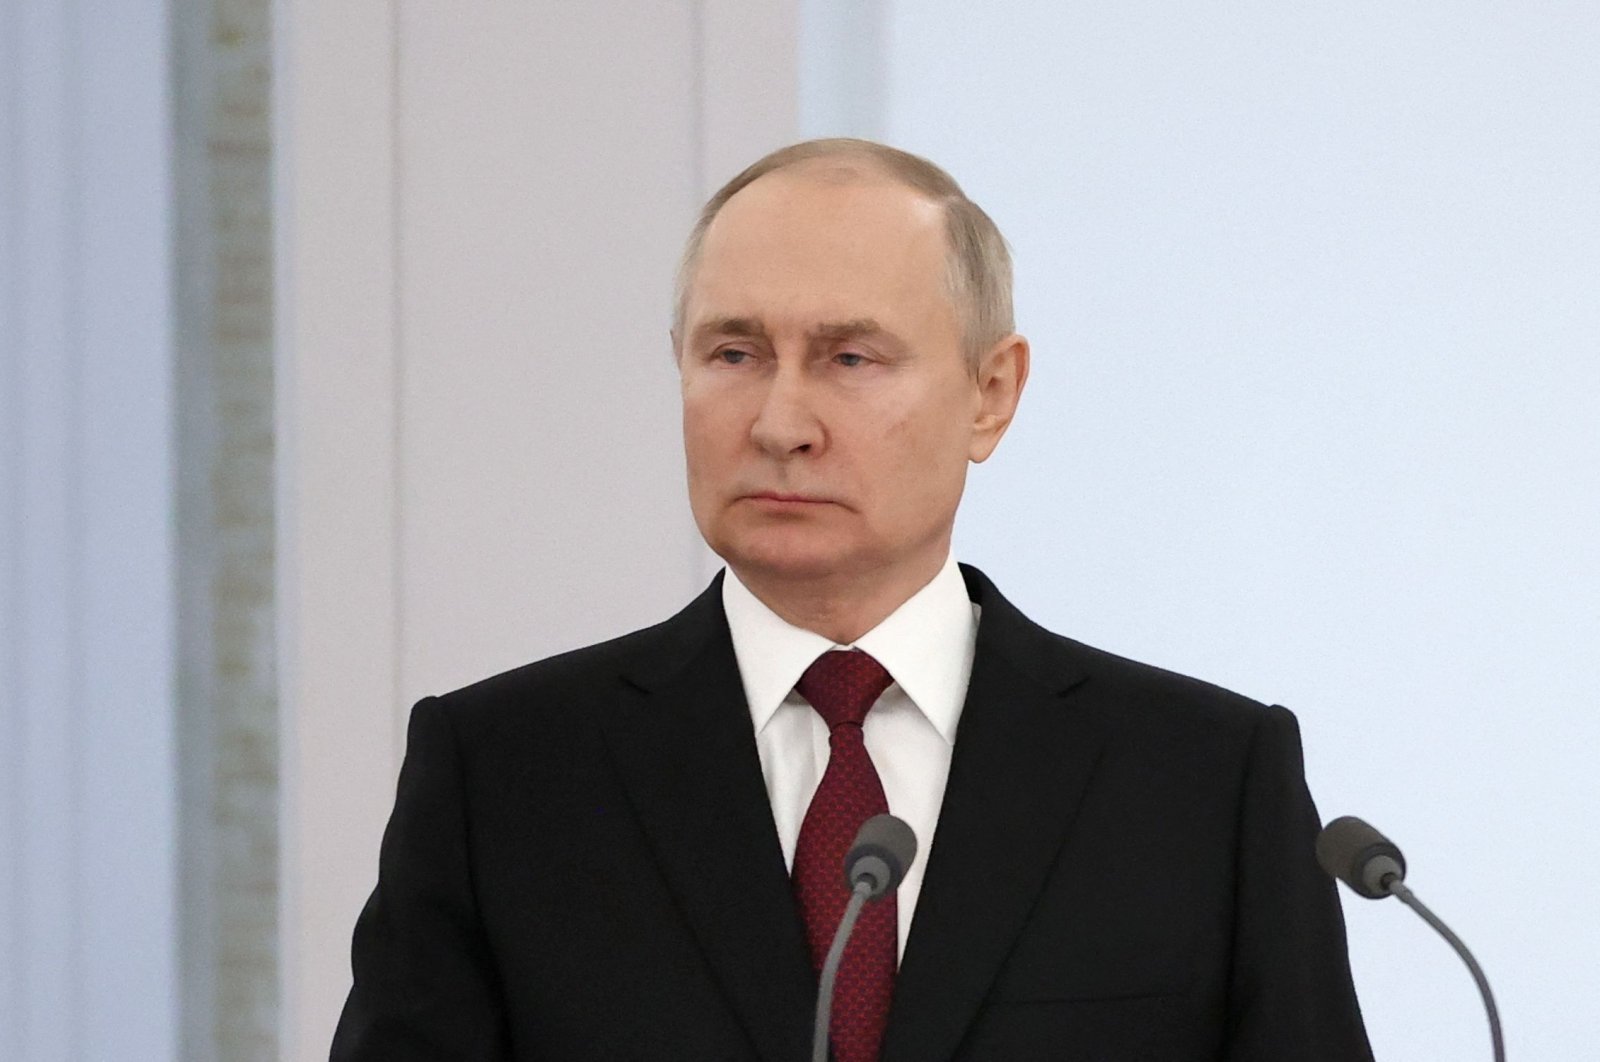 Moskow tidak akan mengerahkan lebih dulu meskipun ketegangan nuklir ‘meningkat’